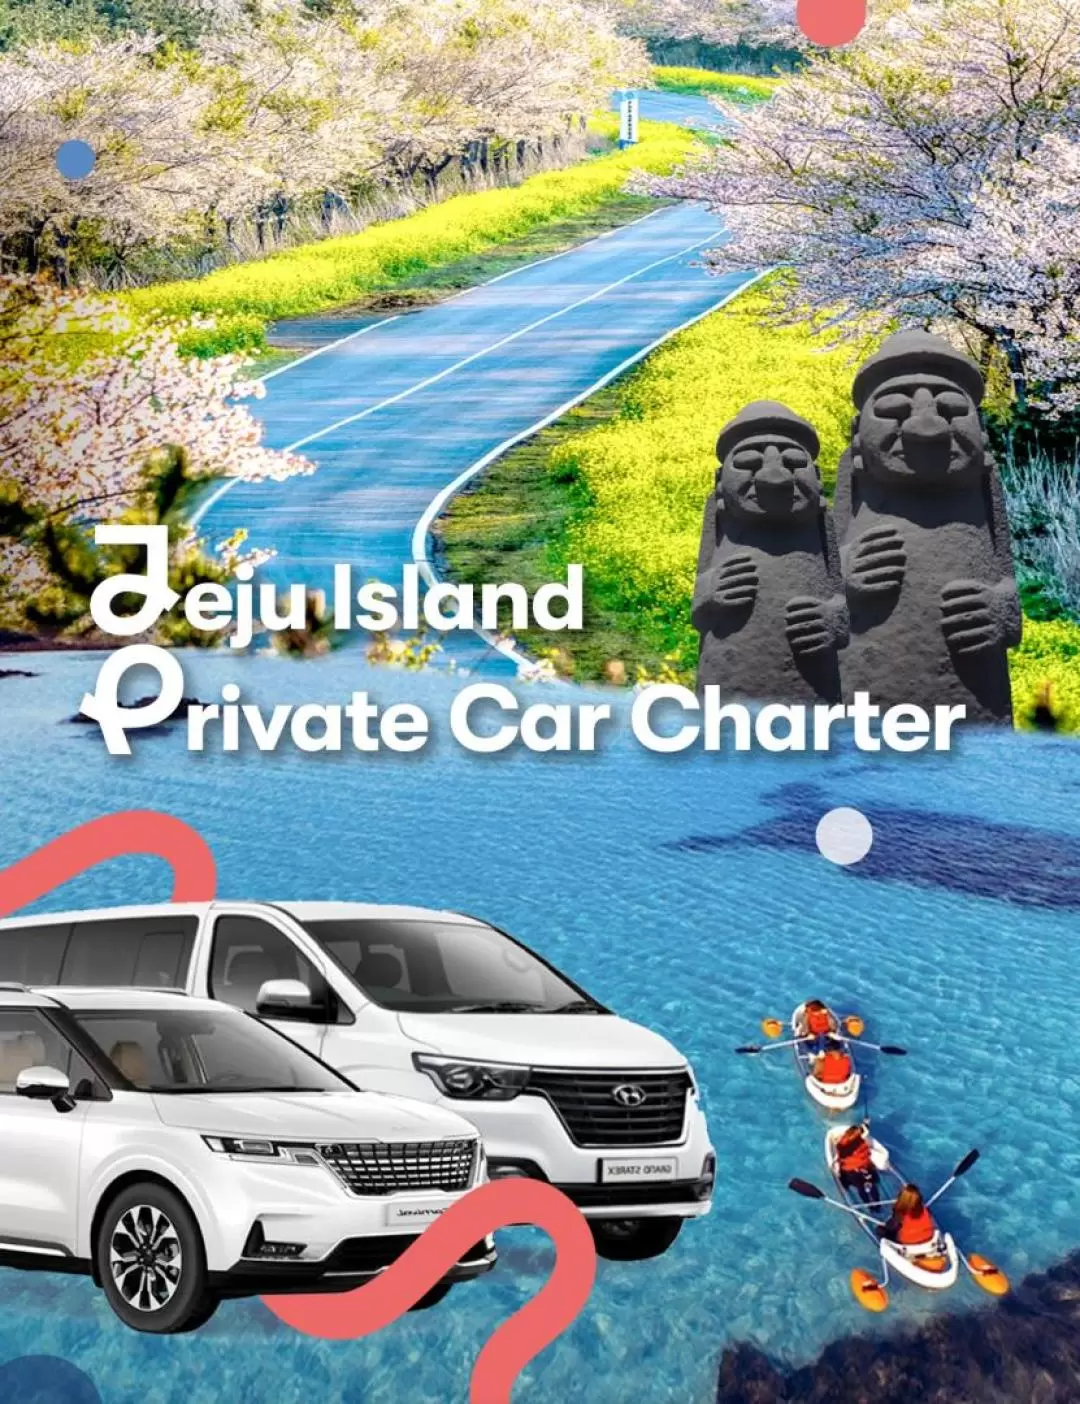 濟州島 私人訂製包車遊（Wonder Trip 提供）